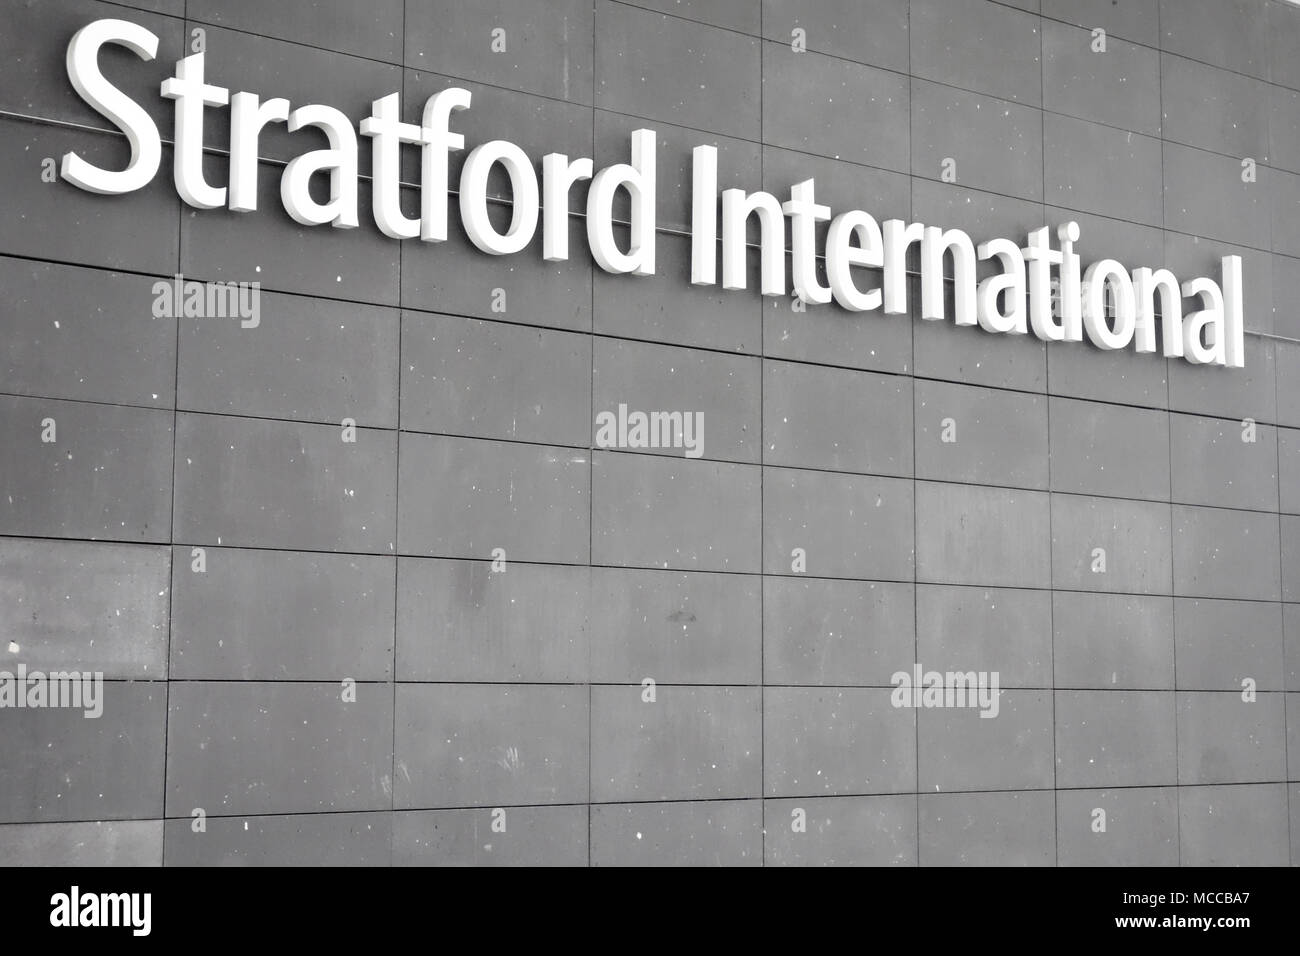 Entrée de la gare internationale de Stratford, à proximité de Westfield Stratford City Shopping Centre. Banque D'Images